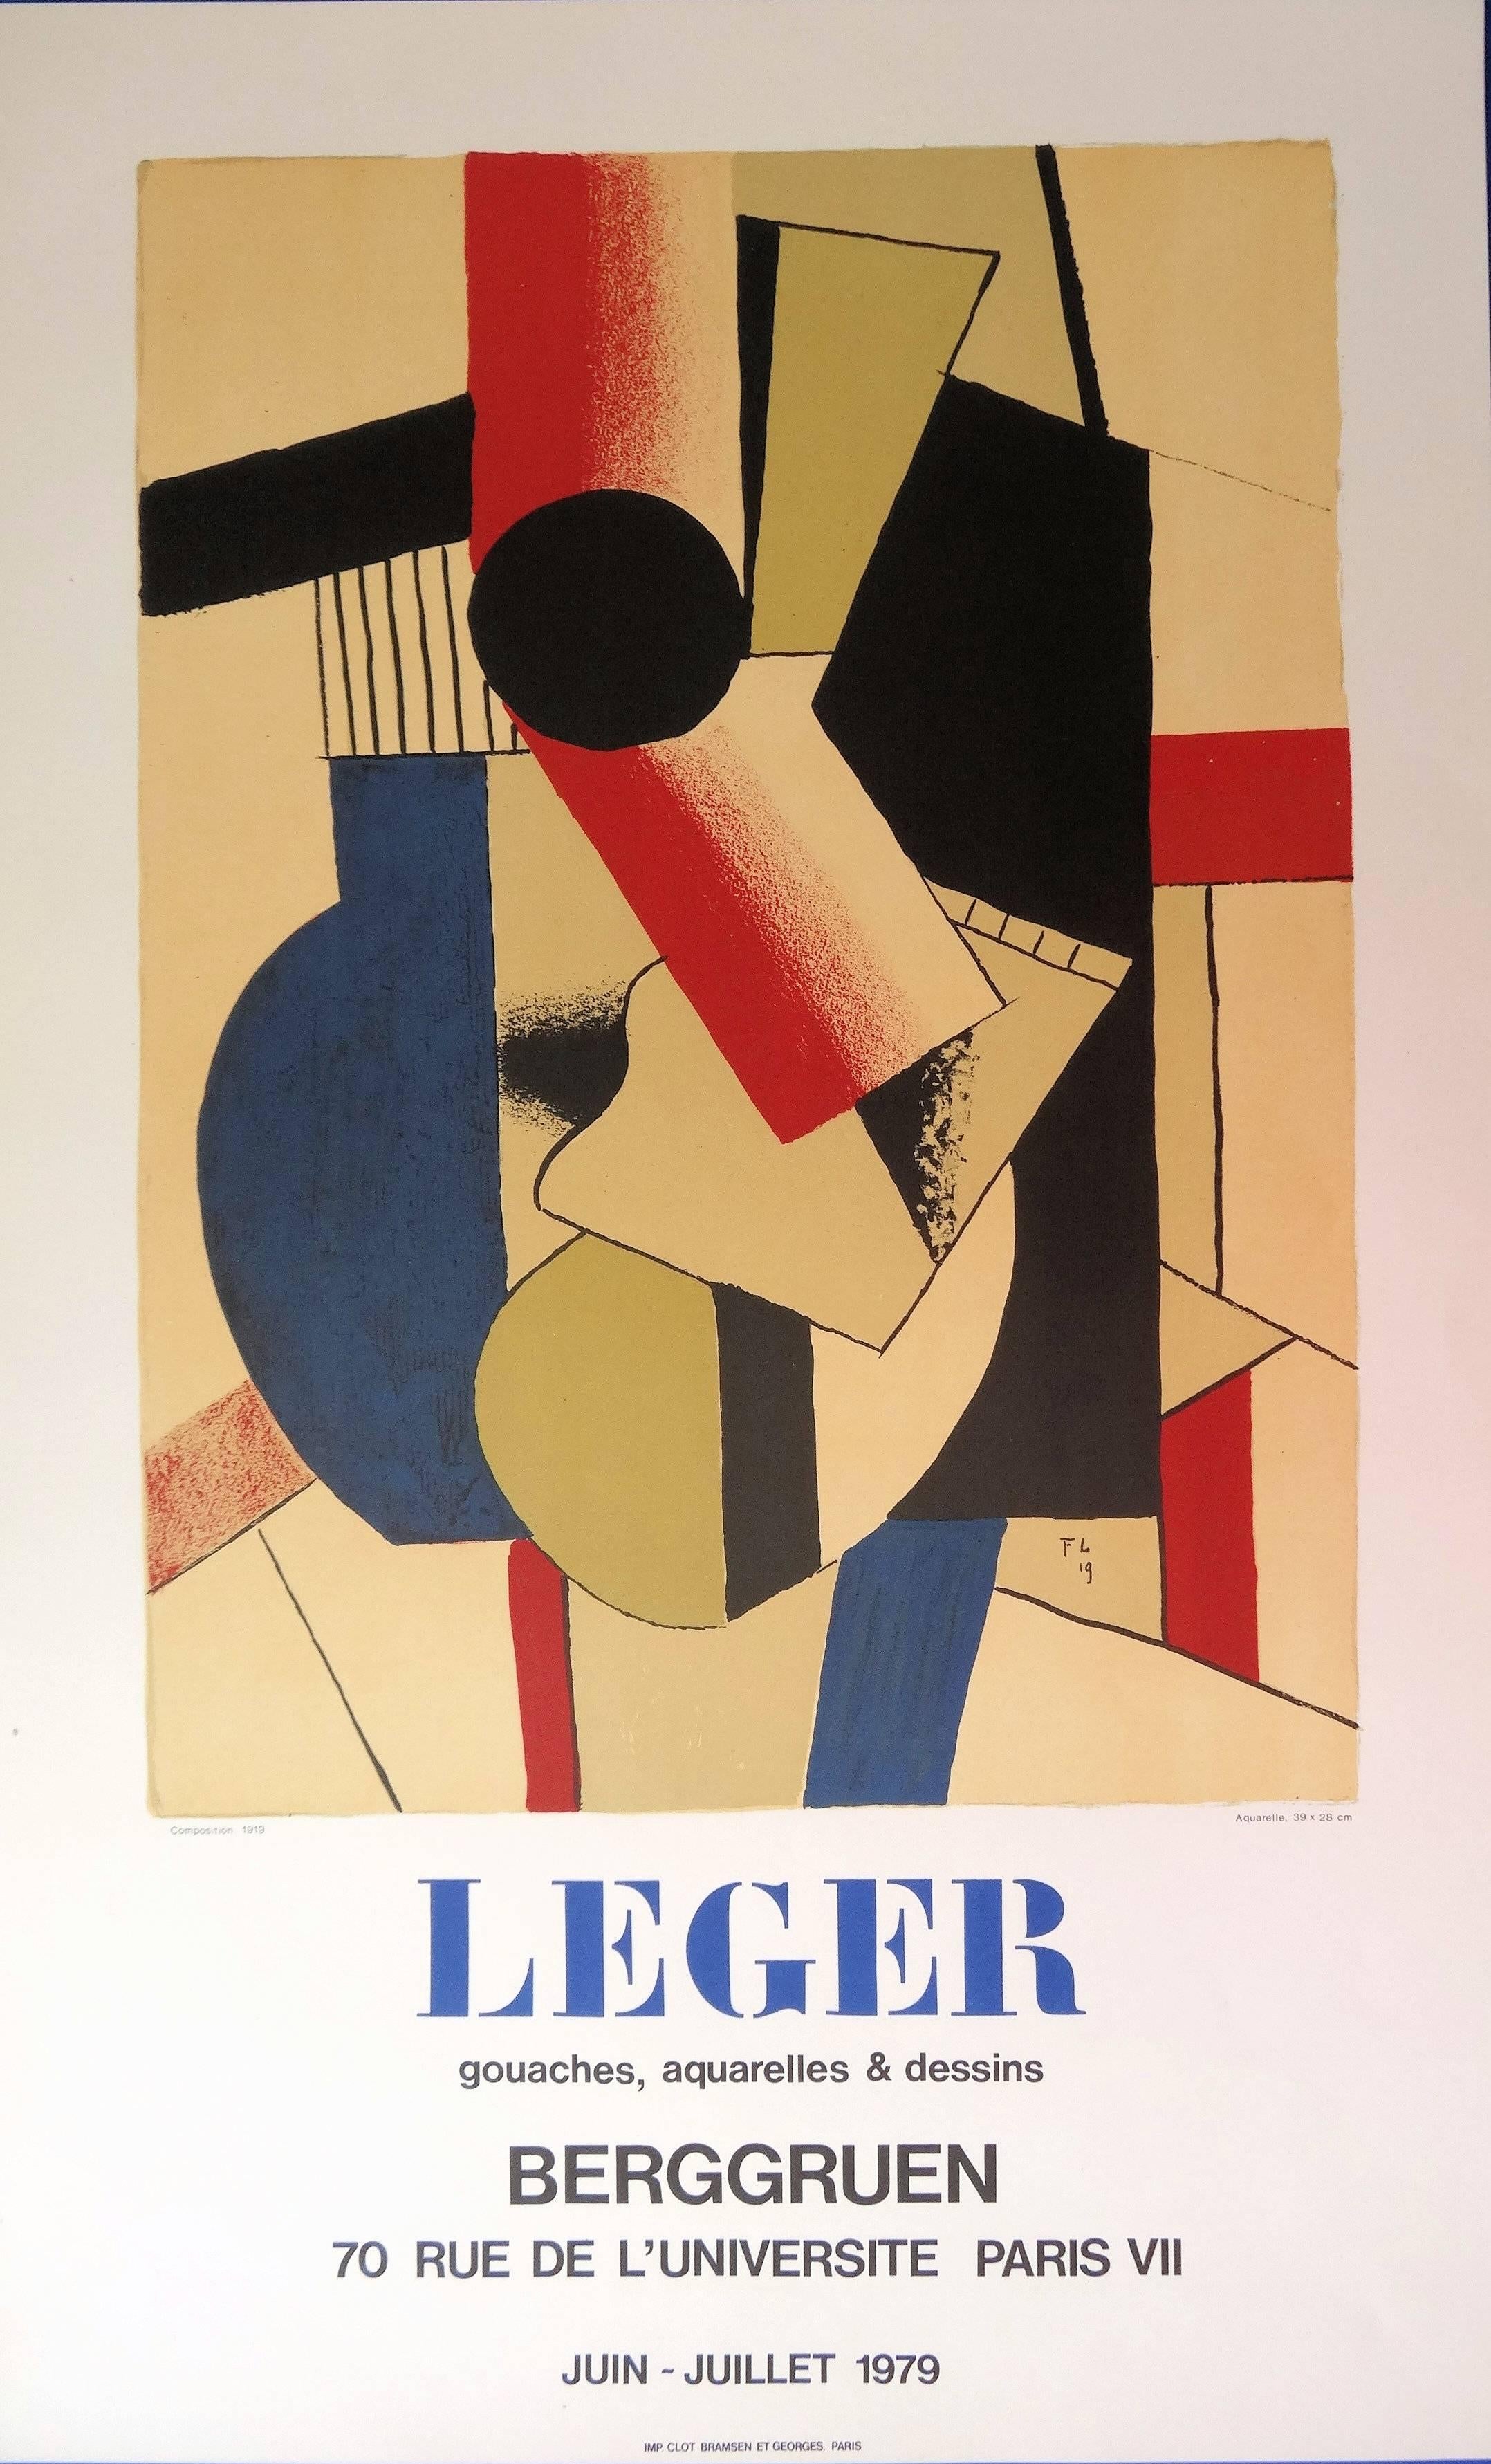 (after) Fernand Léger Abstract Print – Kubistisches Gitarre – Lithographieplakat – Berggruen / Mourlot 1979